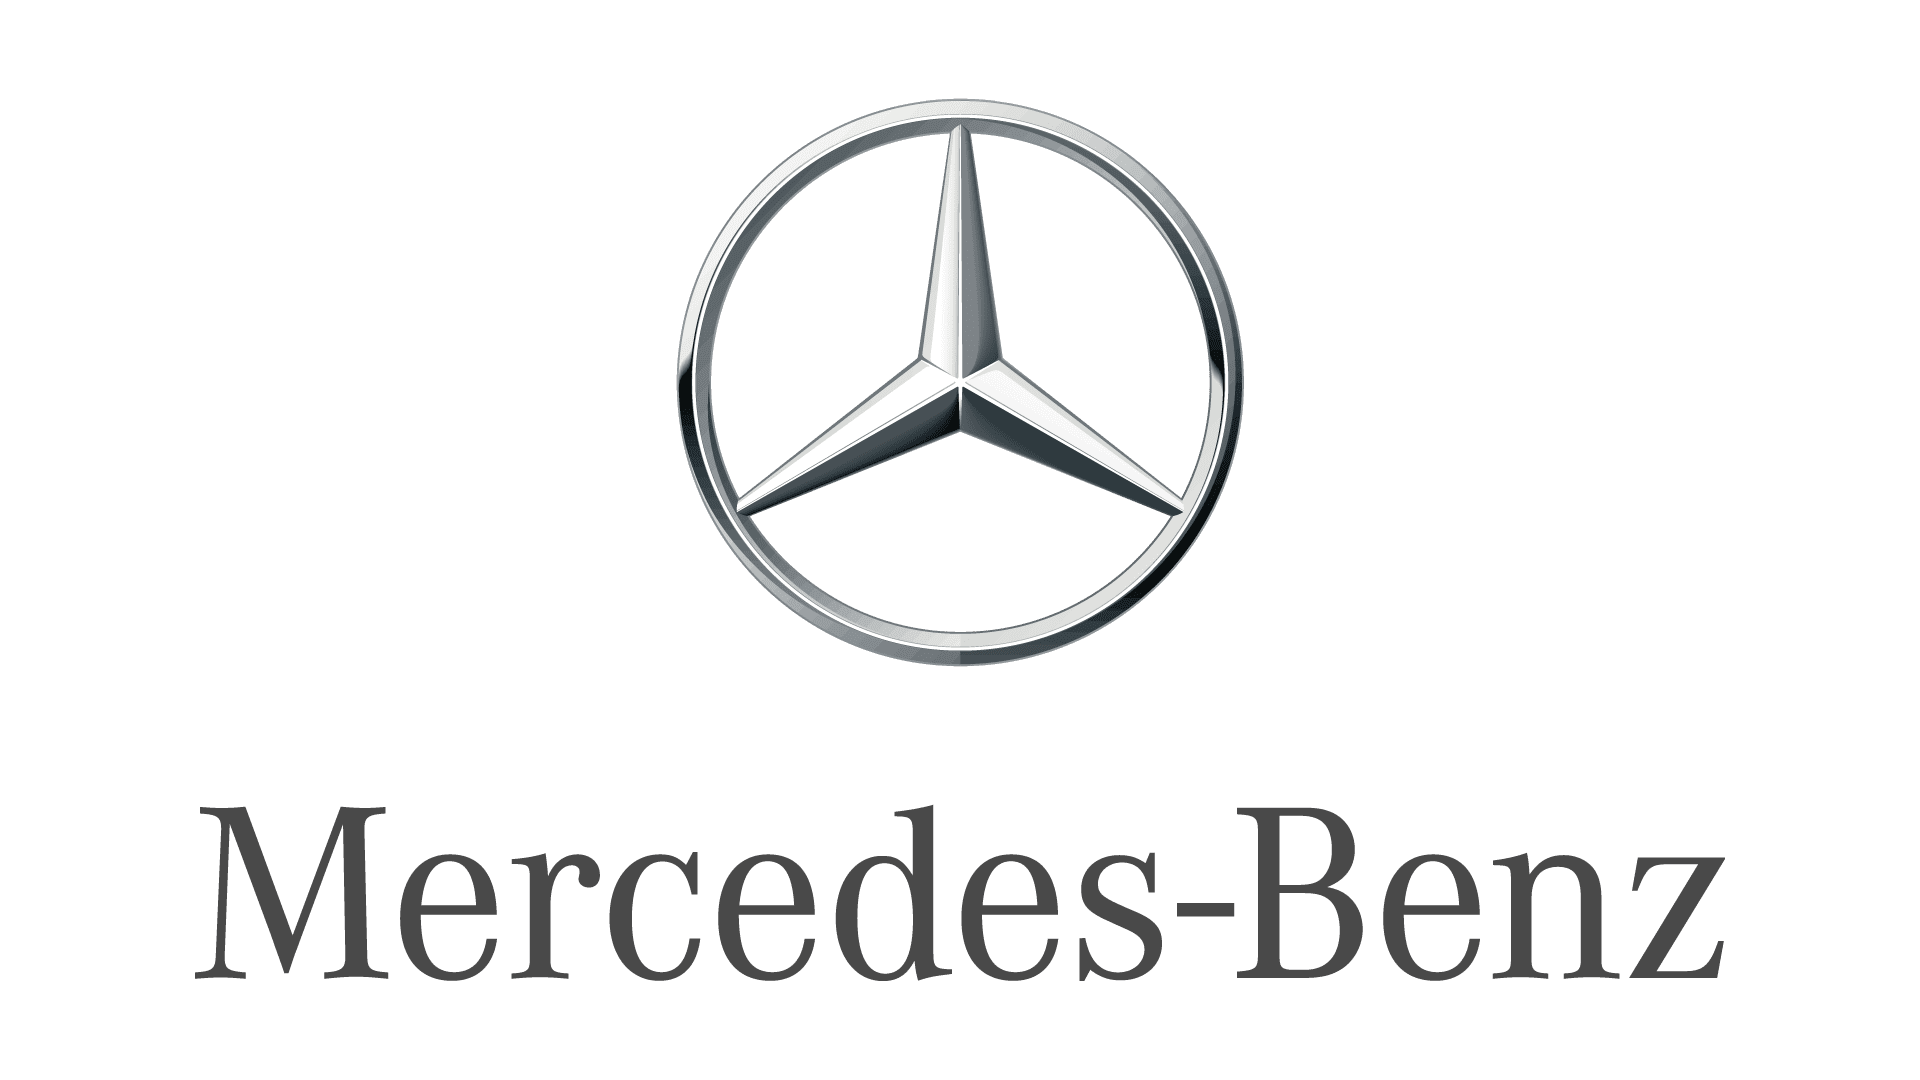 Комфорт Mercedes-Benz GLA Основные функциональные пакеты оборудования комфорта #8